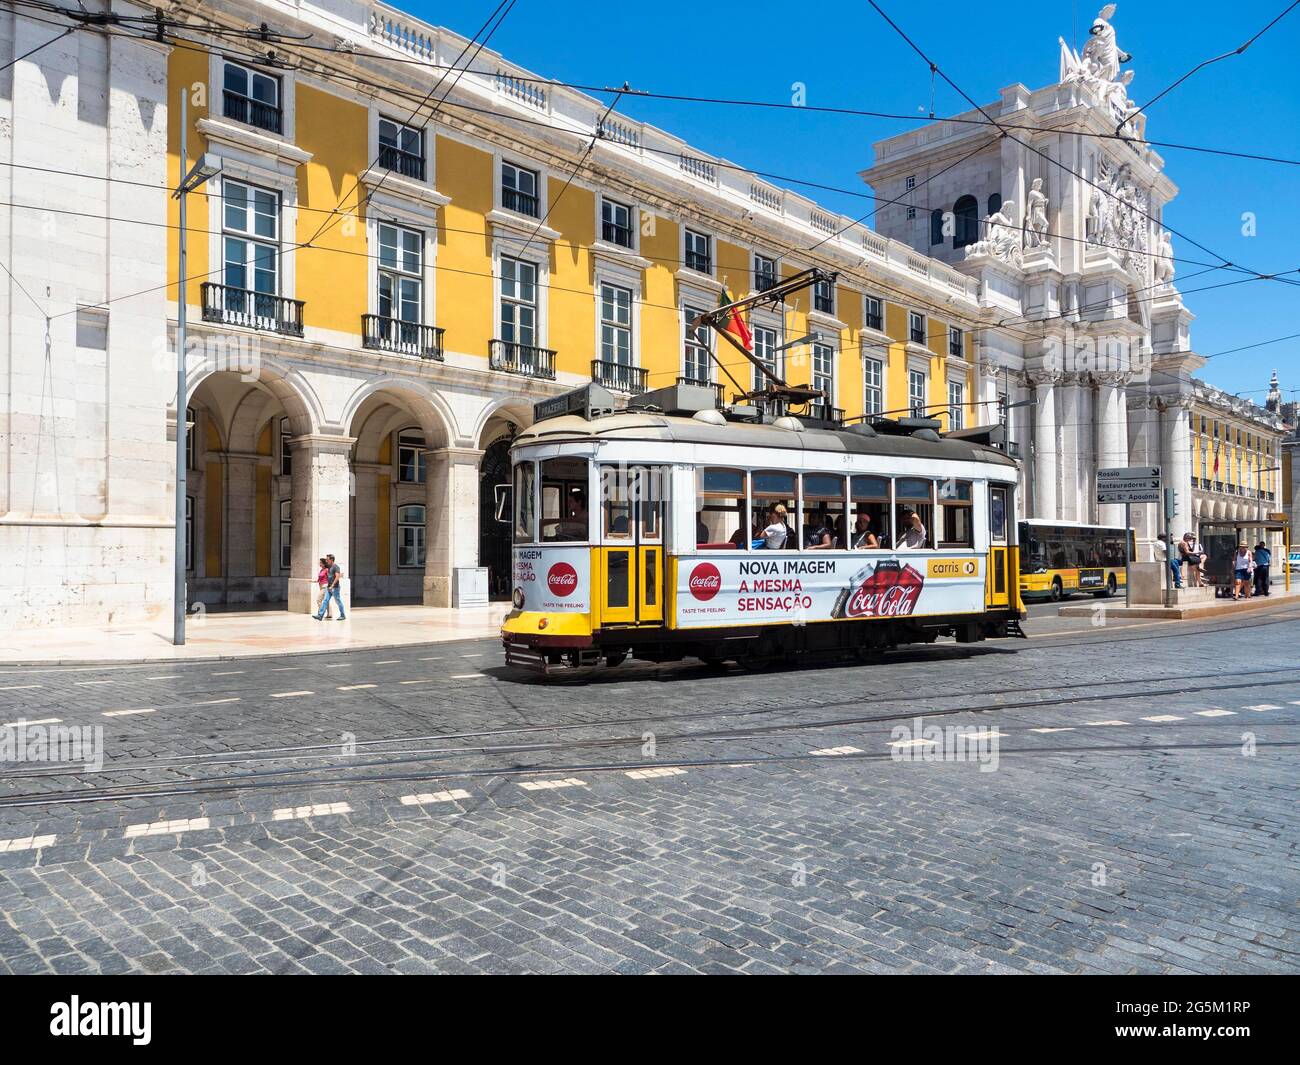 Commercial Square, Praça do Comercio, Tramway at the Arc de Triomphe Arco da Rua Augusta, Lisbon, Portugal, Europe Stock Photo